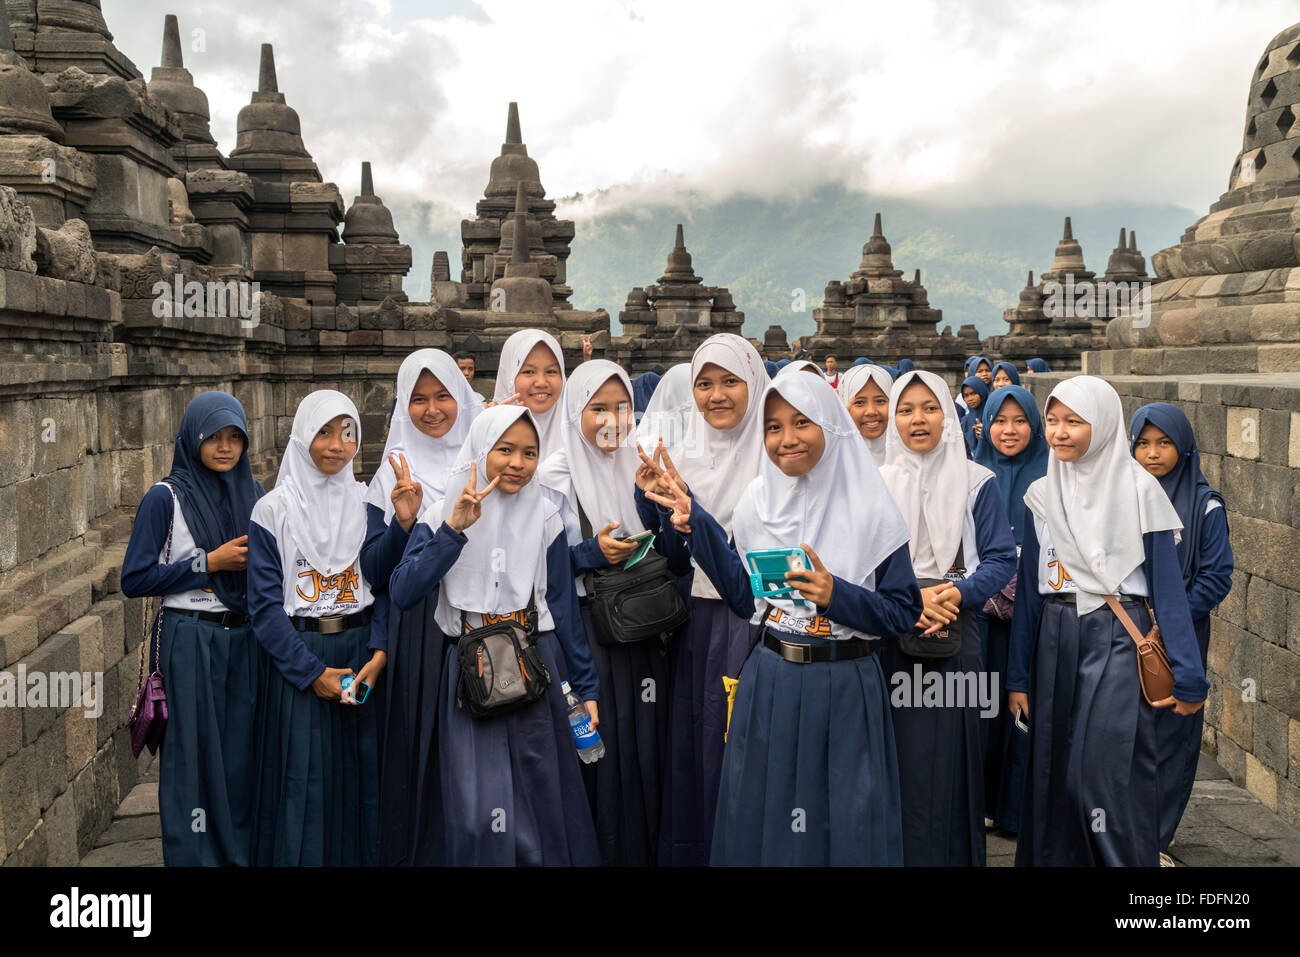 Muslimische Schulmädchen in Uniform mit Kopftuch, buddhistische Tempel Komplex Borobudur, Yogyakarta, Java, Indonesien, Asien Stockfoto